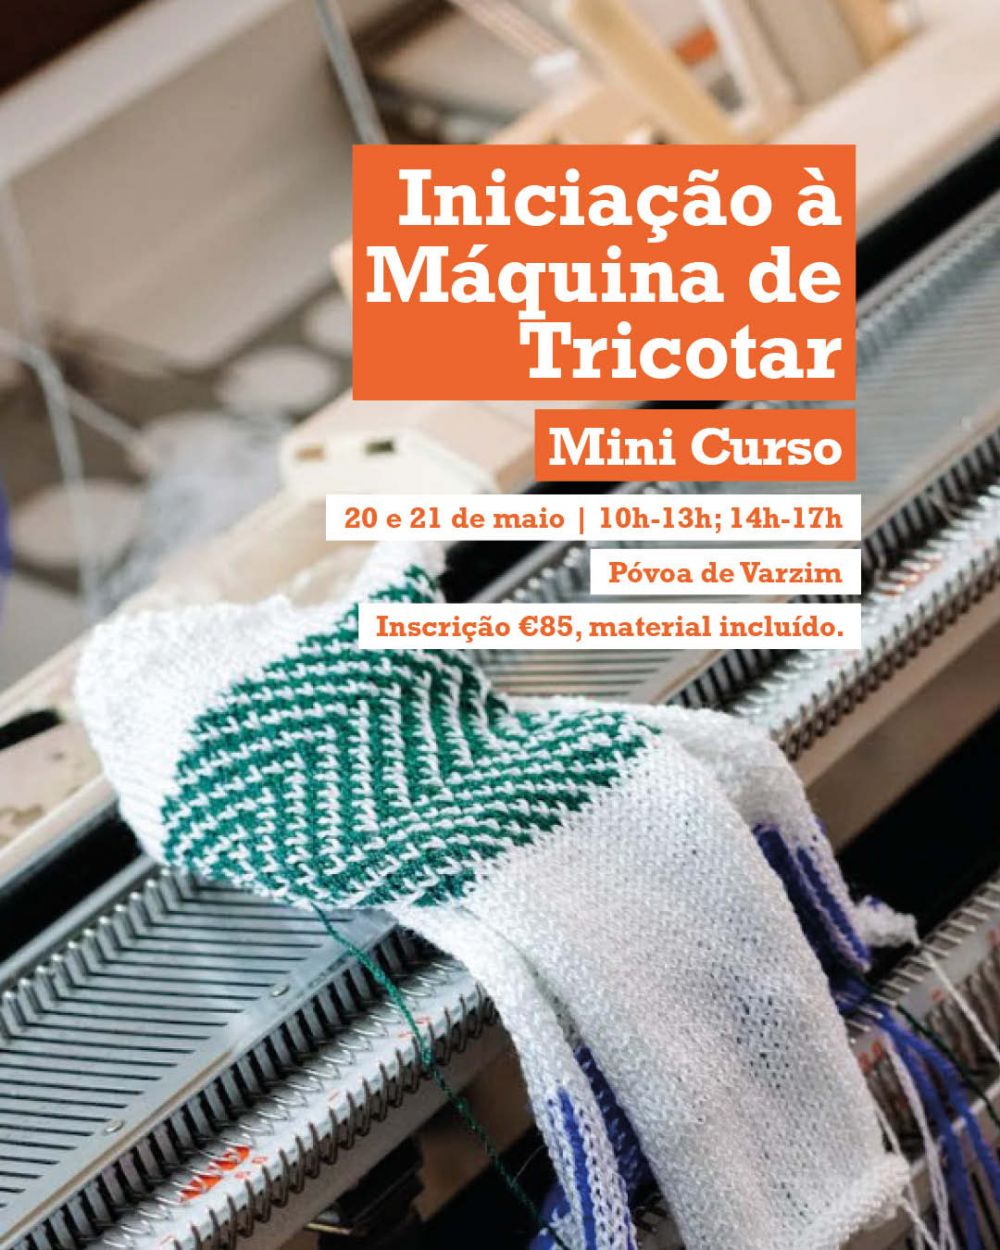 Mini Curso de Iniciação à Máquina de Tricotar